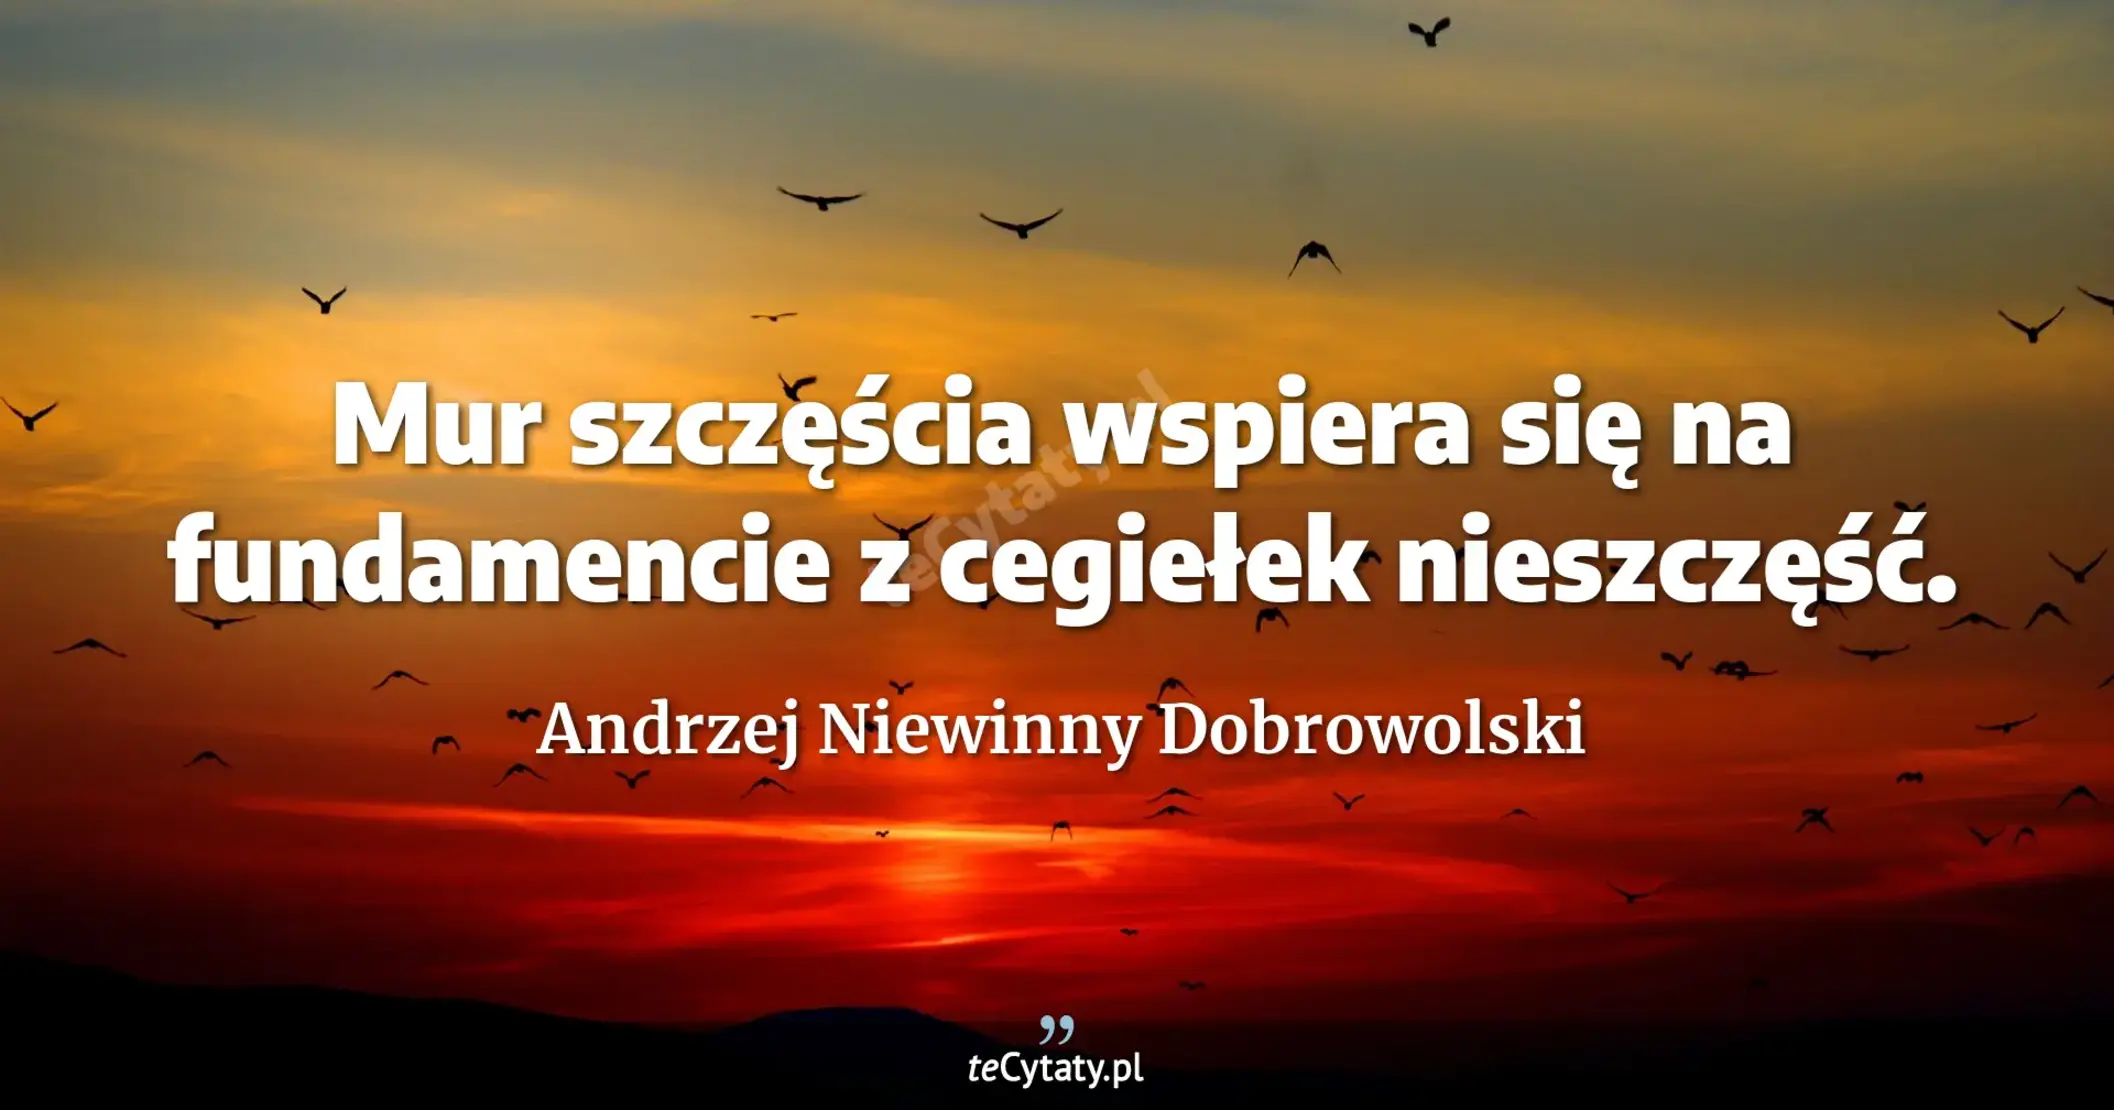 Mur szczęścia wspiera się na fundamencie z cegiełek nieszczęść. - Andrzej Niewinny Dobrowolski